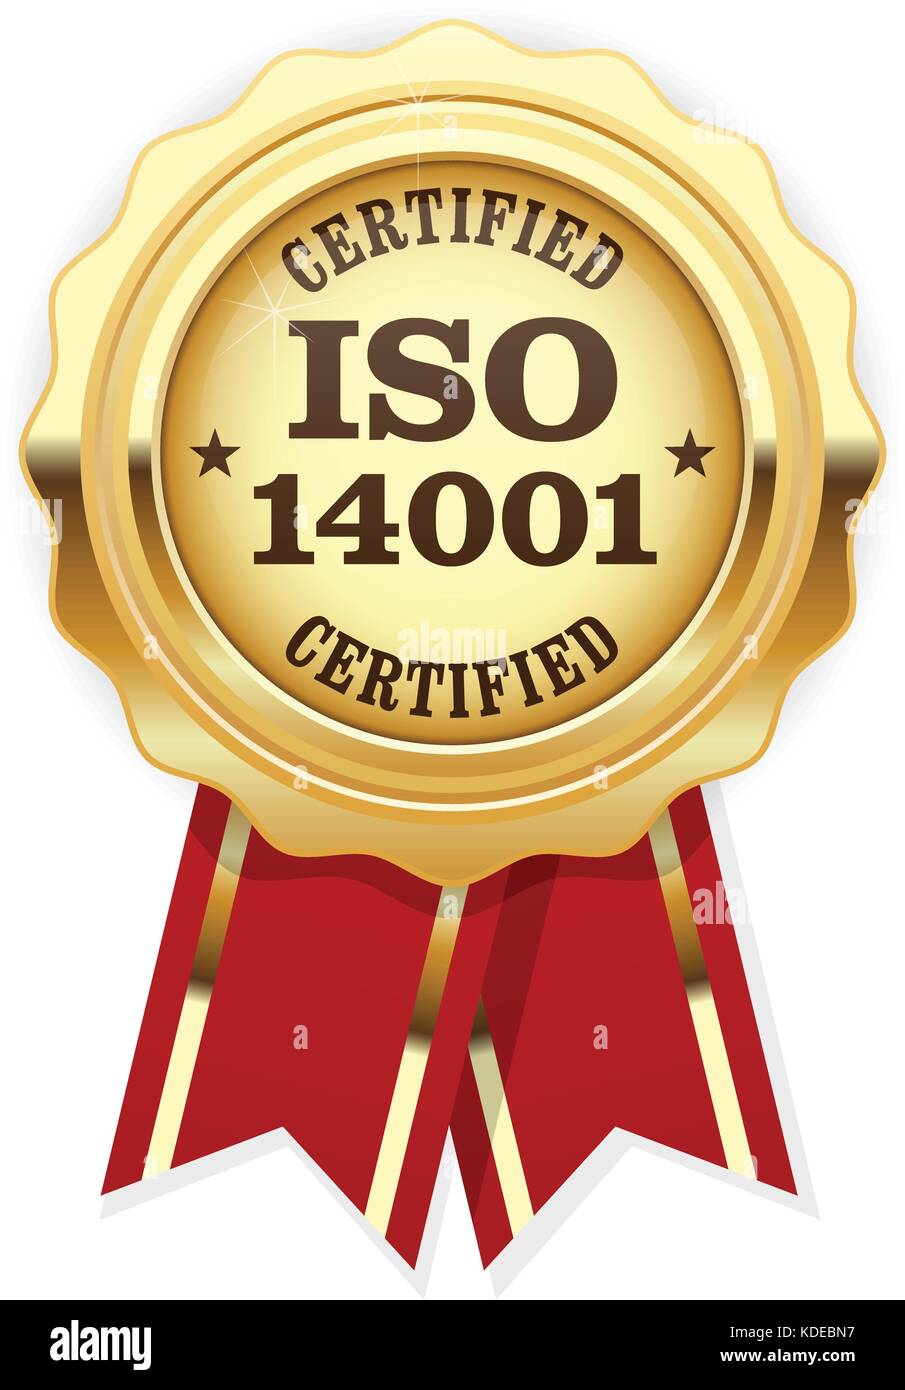 Certificazione ISO 14001 - standard di qualità di sigillo d'oro, gestione ambientale Illustrazione Vettoriale